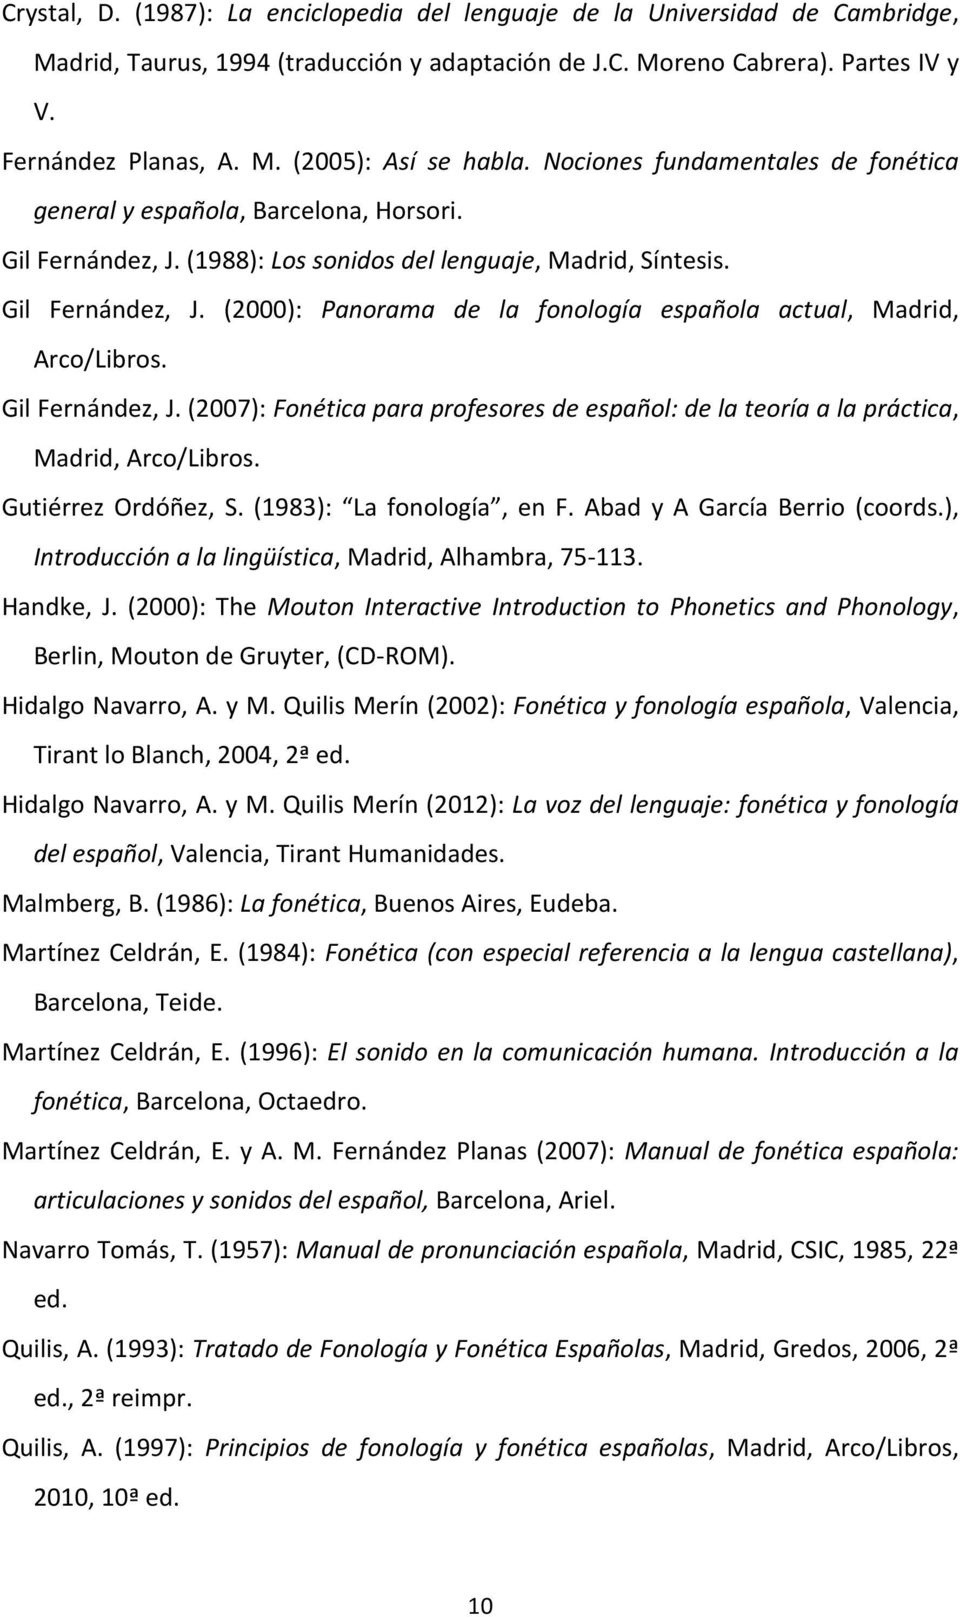 Gil Fernández, J. (2007): Fonética para profesores de español: de la teoría a la práctica, Madrid, Arco/Libros. Gutiérrez Ordóñez, S. (1983): La fonología, en F. Abad y A García Berrio (coords.